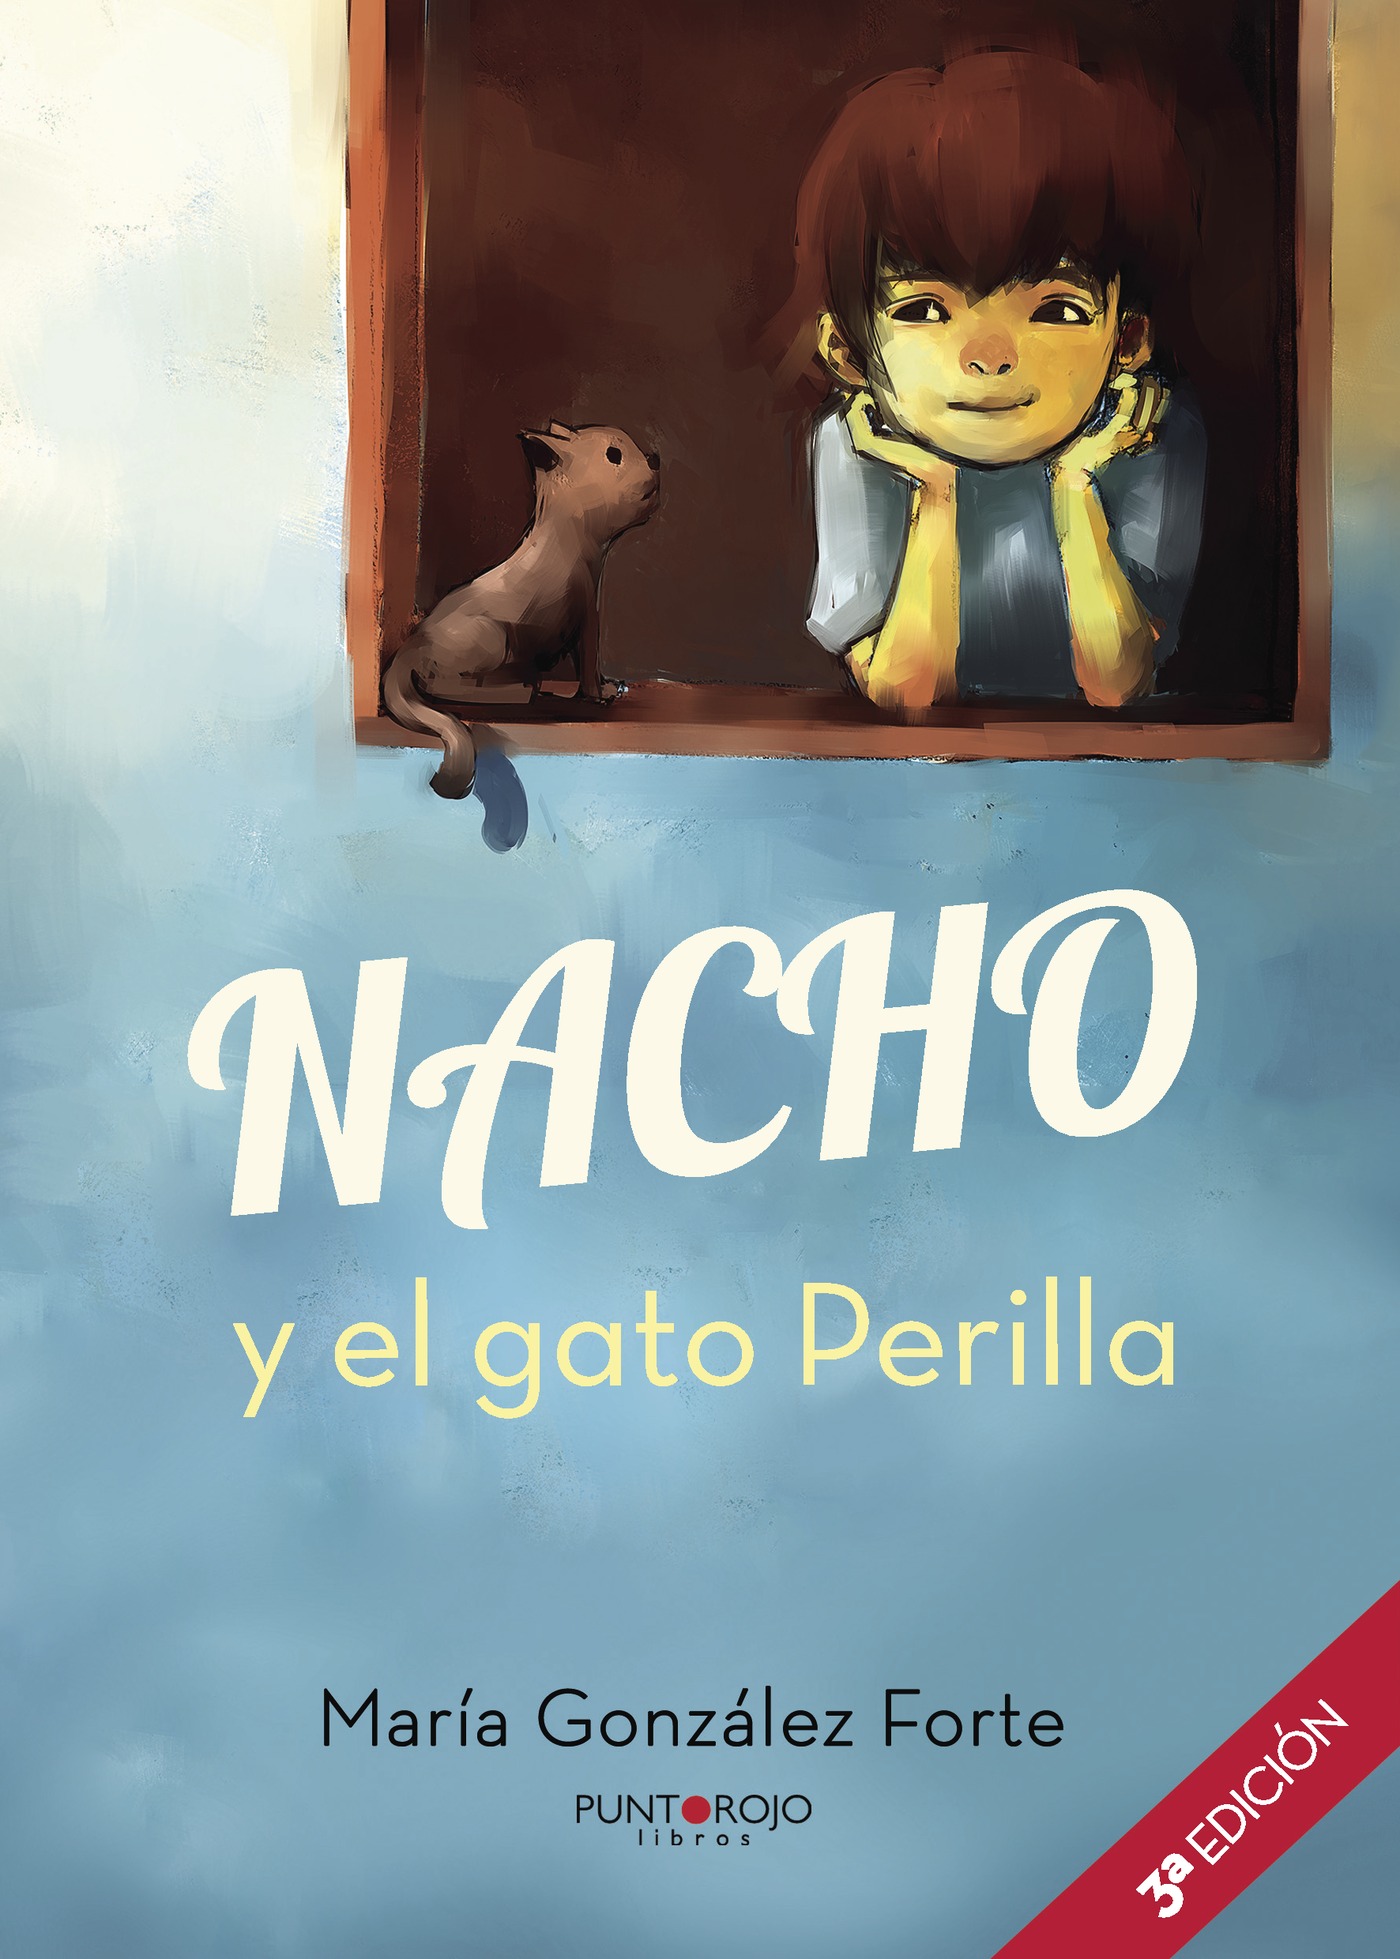 Descargar Libro Nacho Dominicano Pdf Gratis - Libro Nacho ...